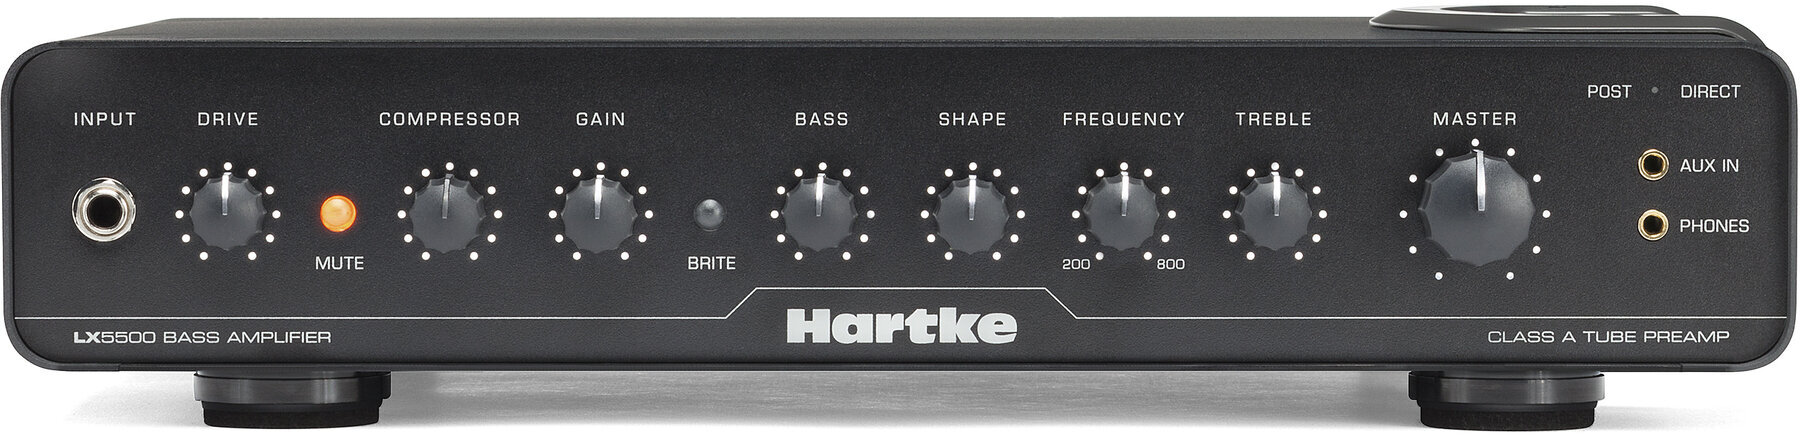 Hybrid Bass Amplifier Hartke LX5500